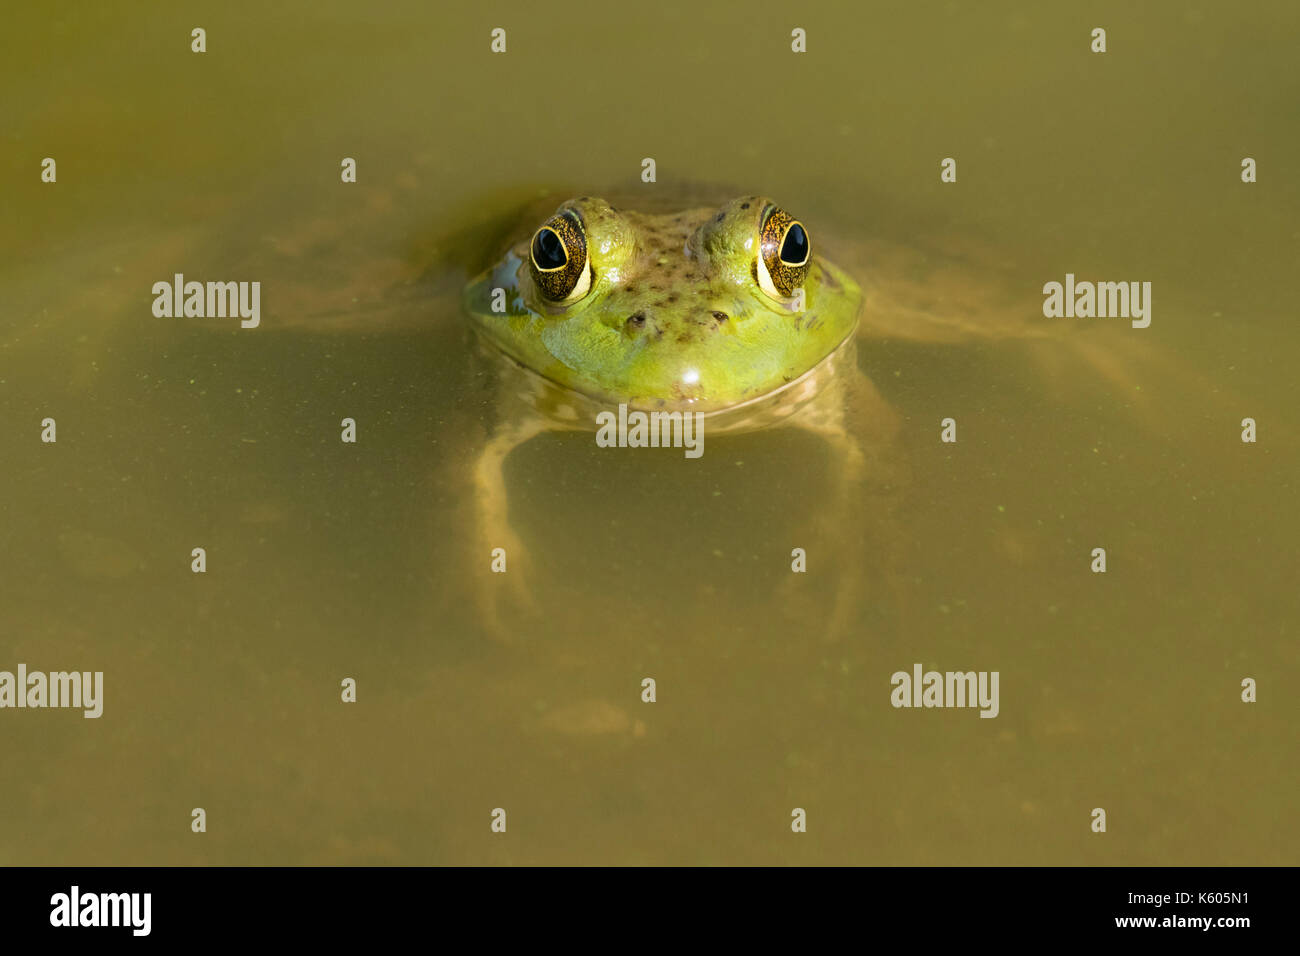 American billfrog (Lithobates catesbeianus) immerso in acqua in una foresta lago, Ames, Iowa, USA Foto Stock